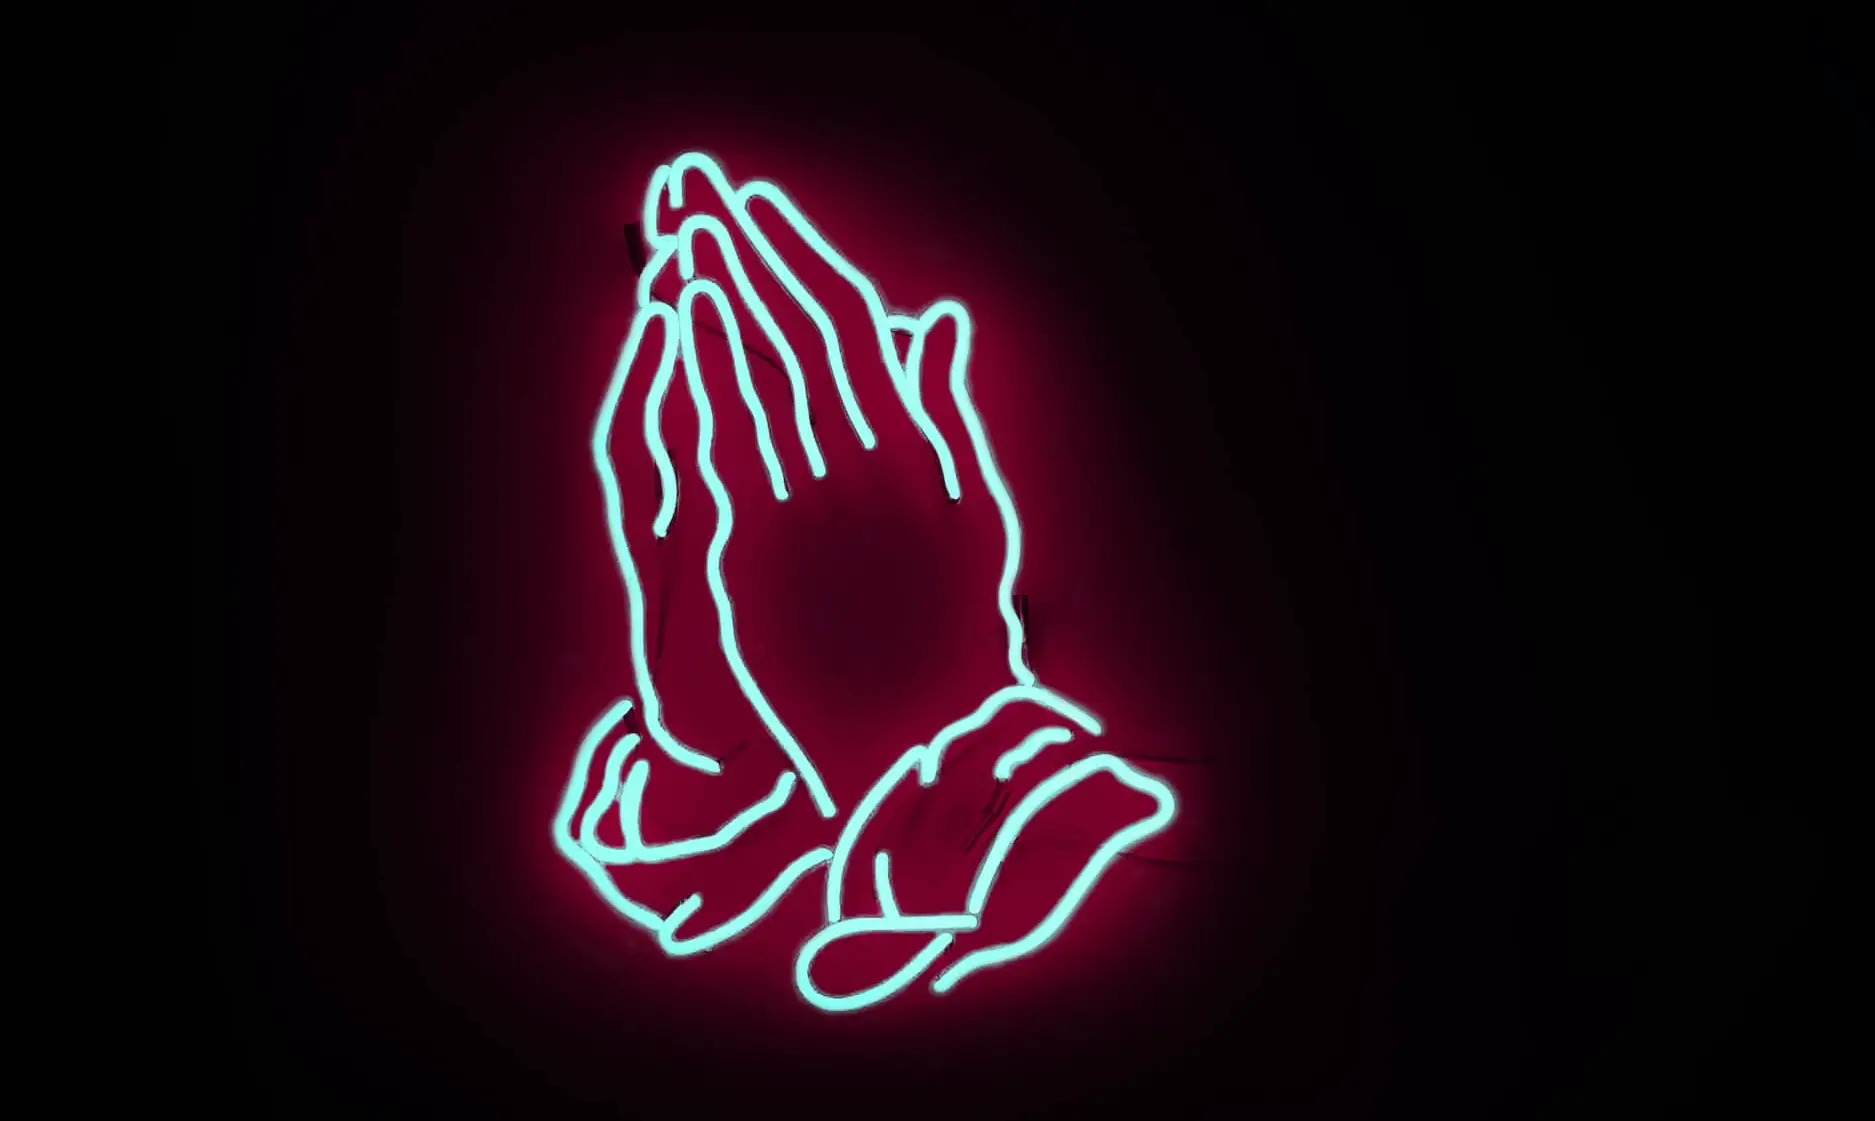 Neon hands in prayer